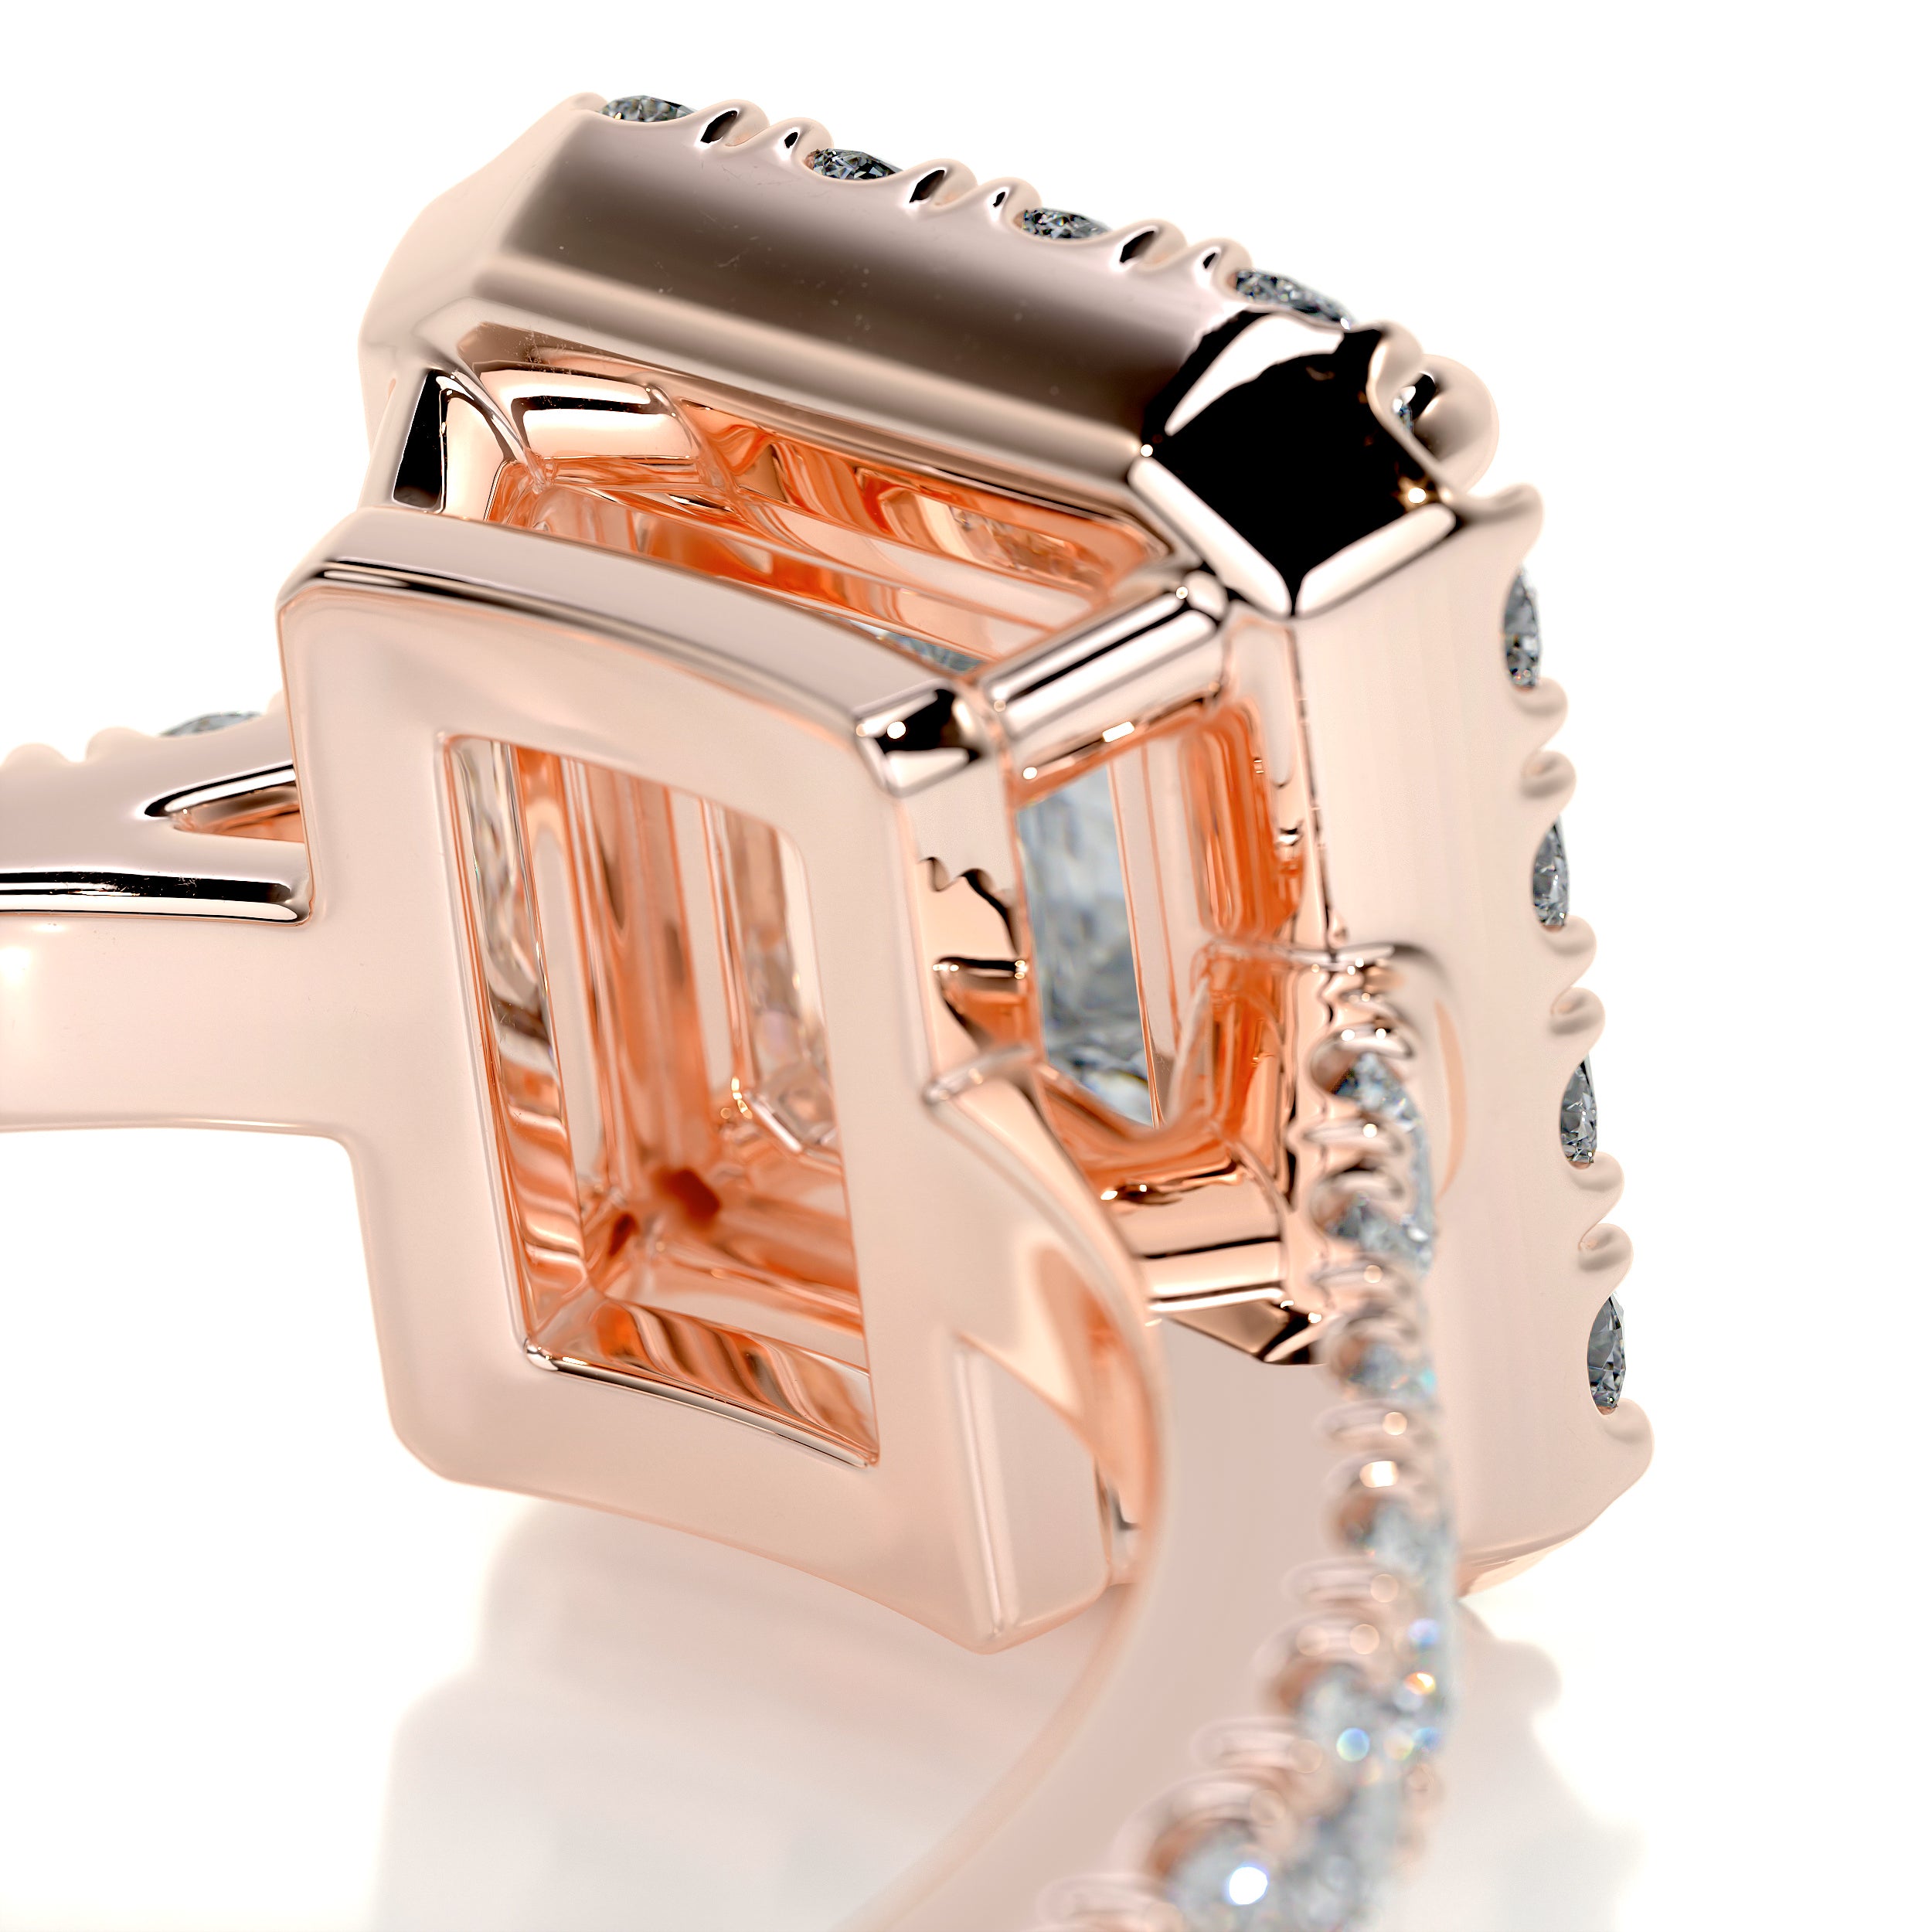 Zoey Diamond Engagement Ring   (1.5 Carat) -14K Rose Gold